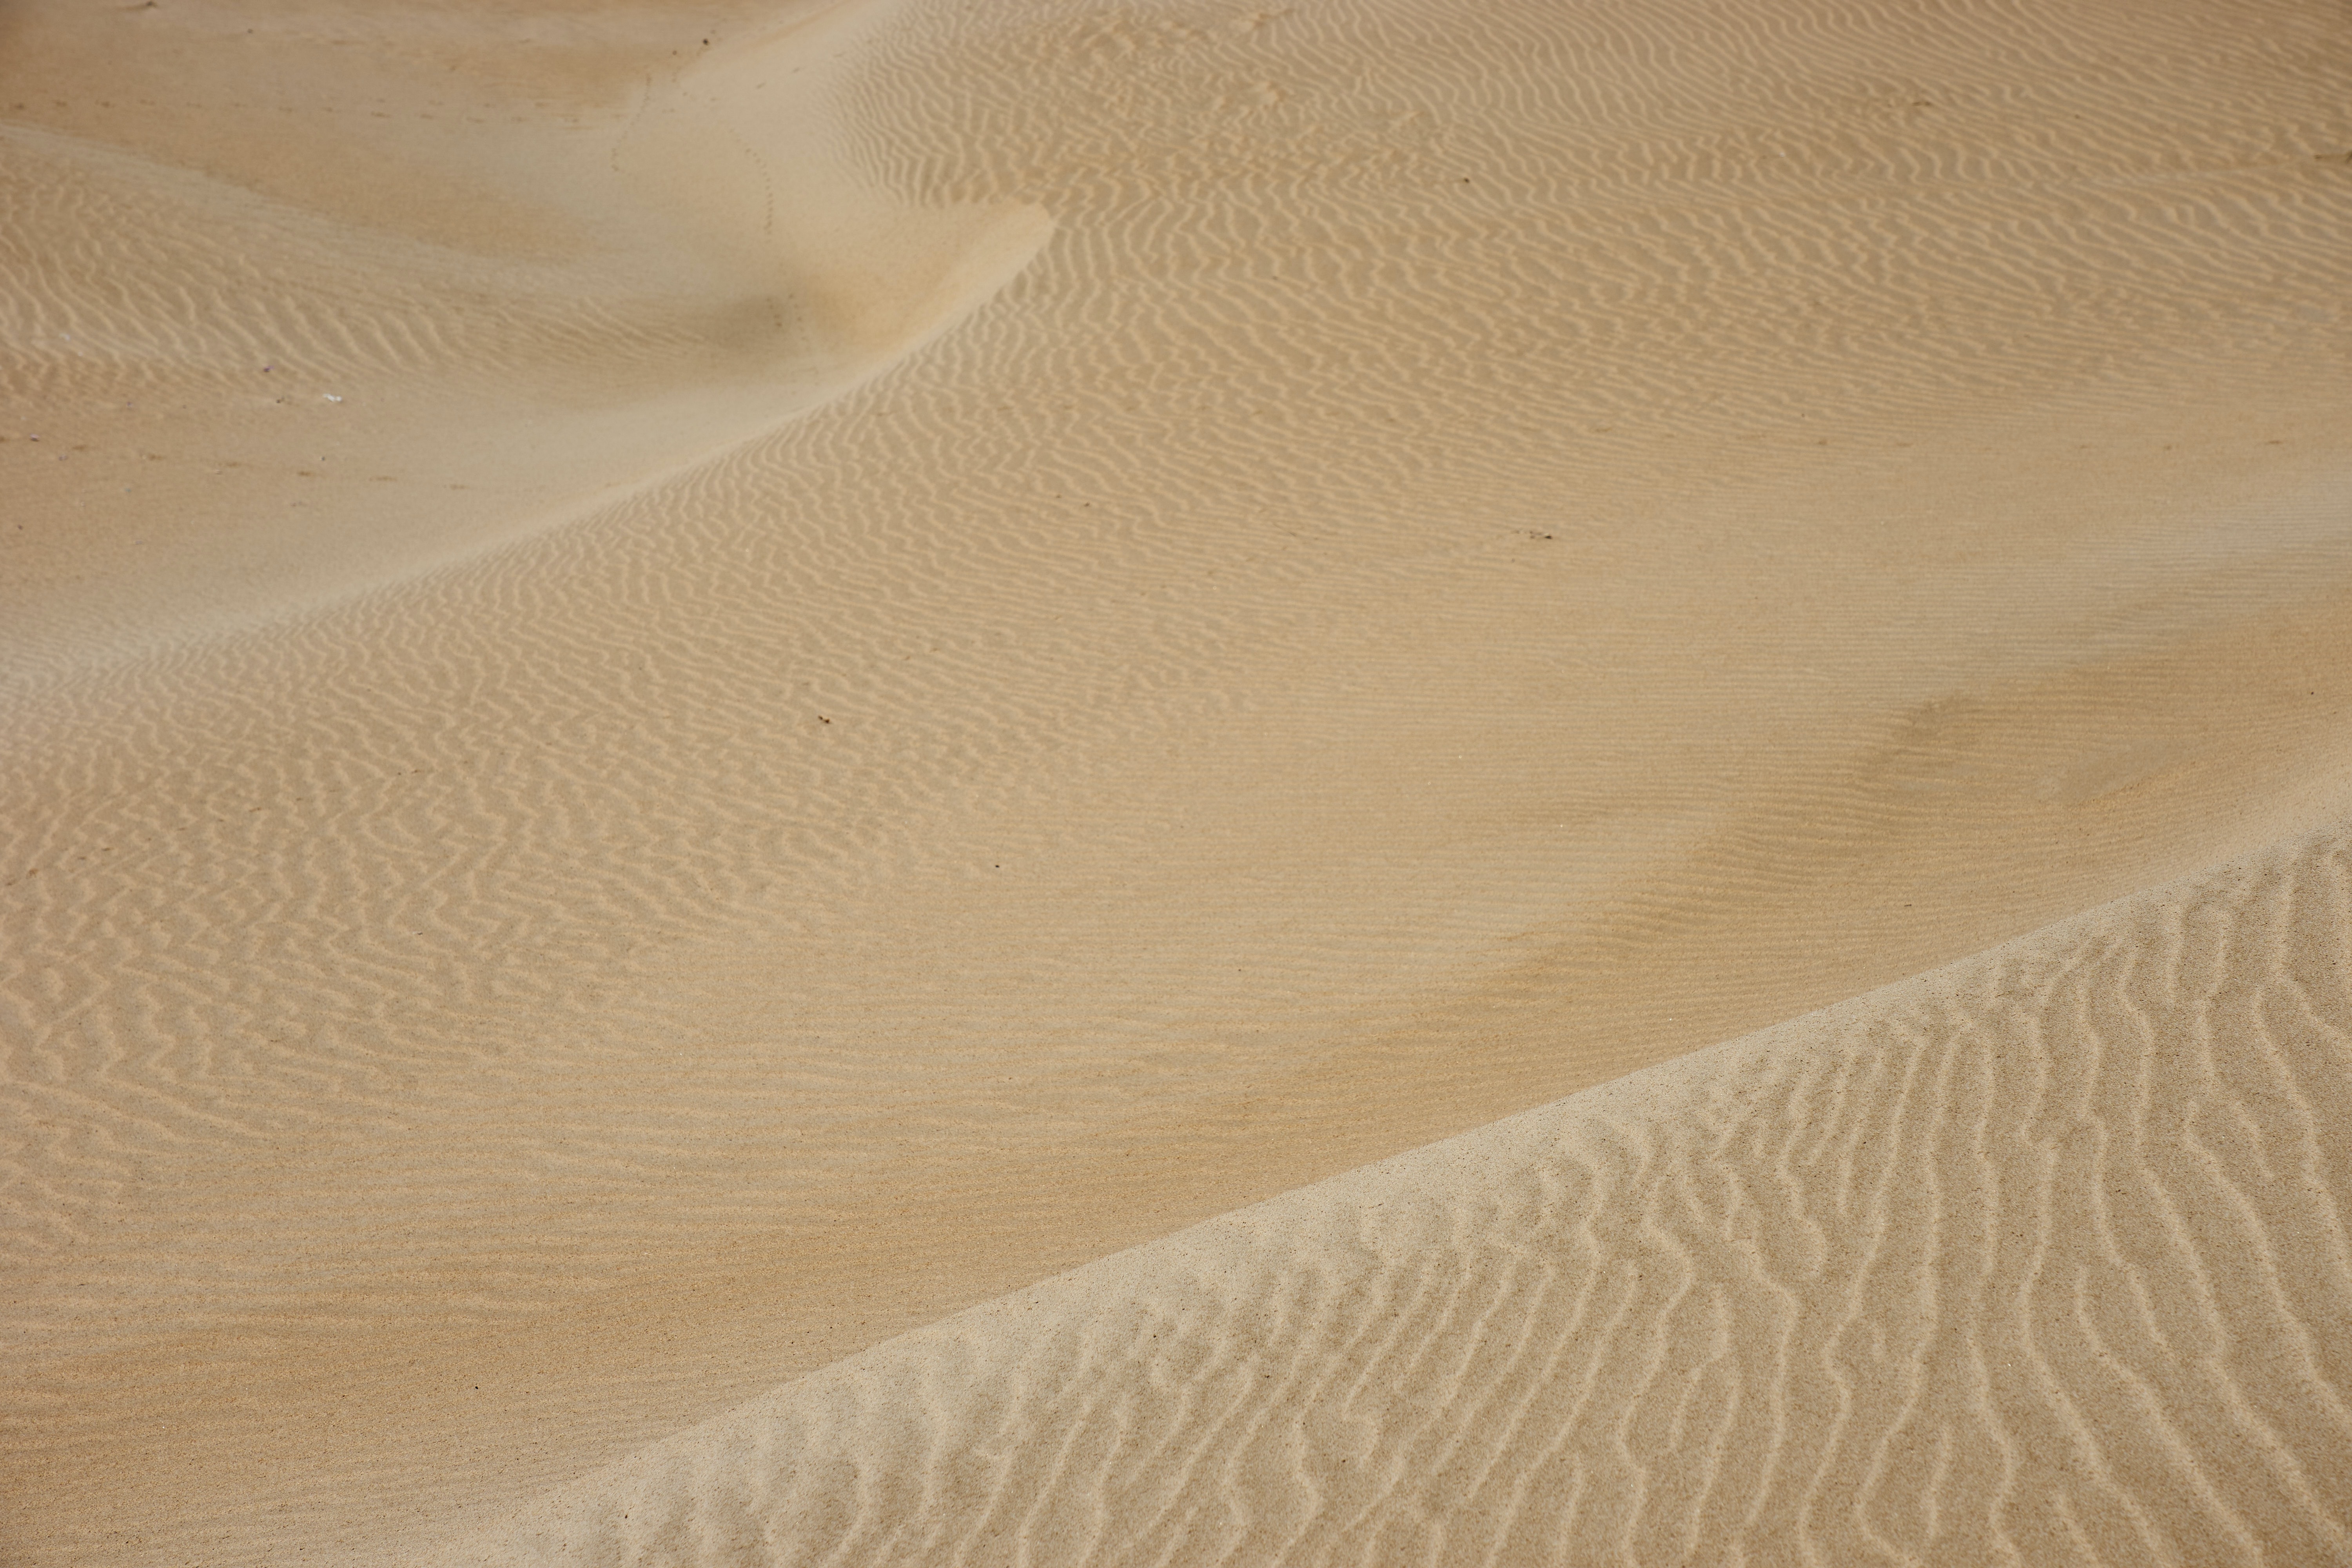 desktop Images waves, sand, desert, texture, textures, wavy